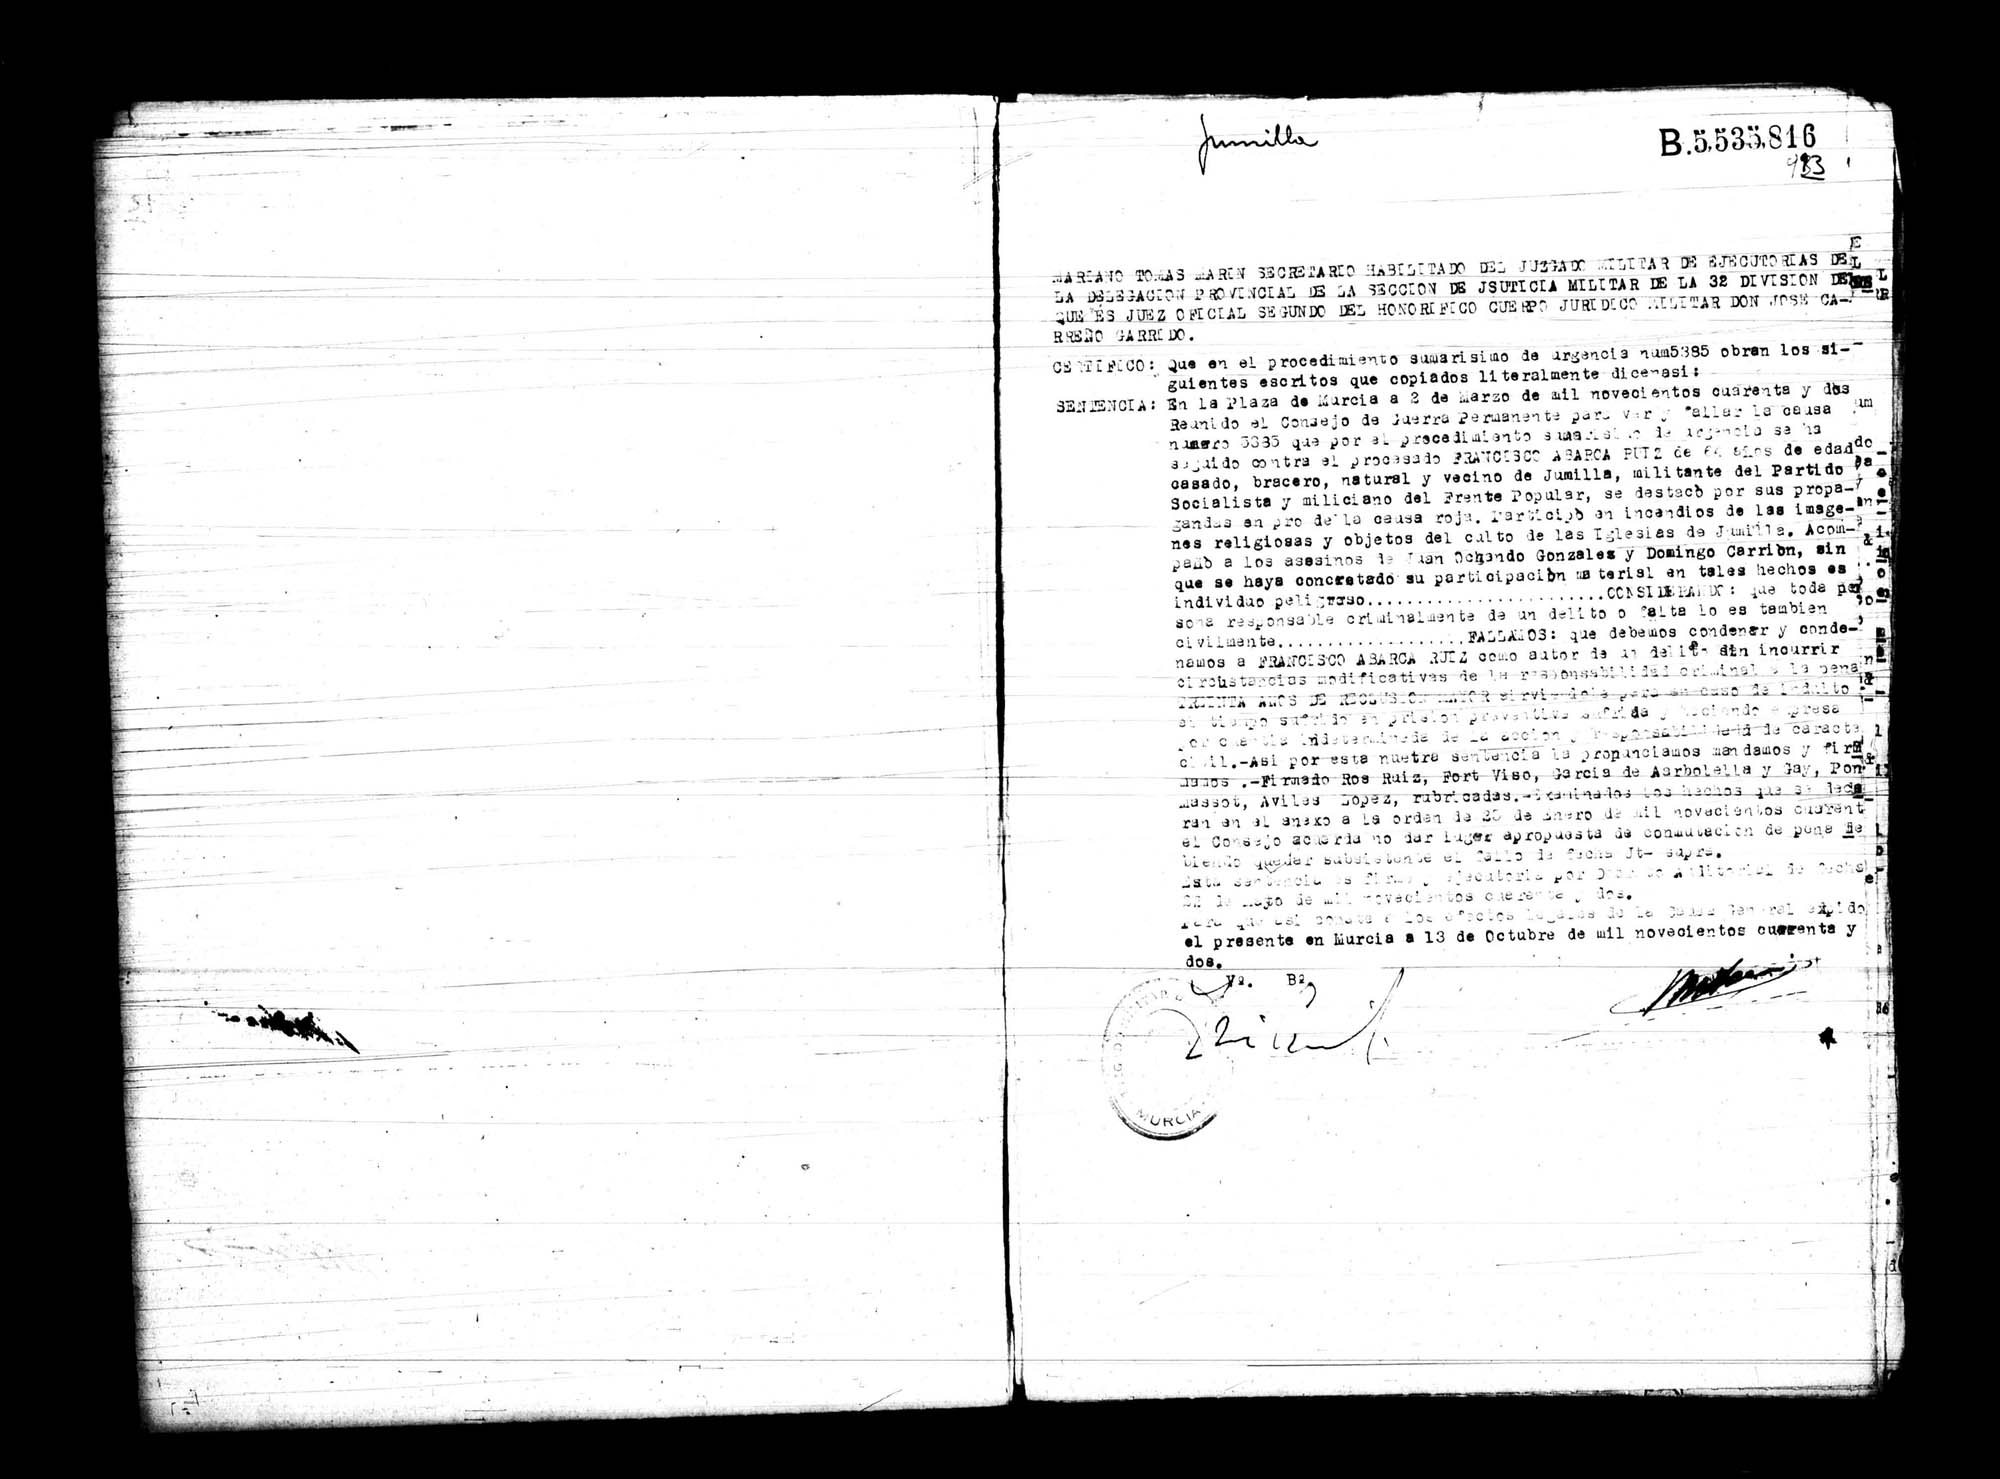 Certificado de la sentencia pronunciada contra Francisco Abarca Ruiz, causa 5385, el 2 de marzo de 1942.